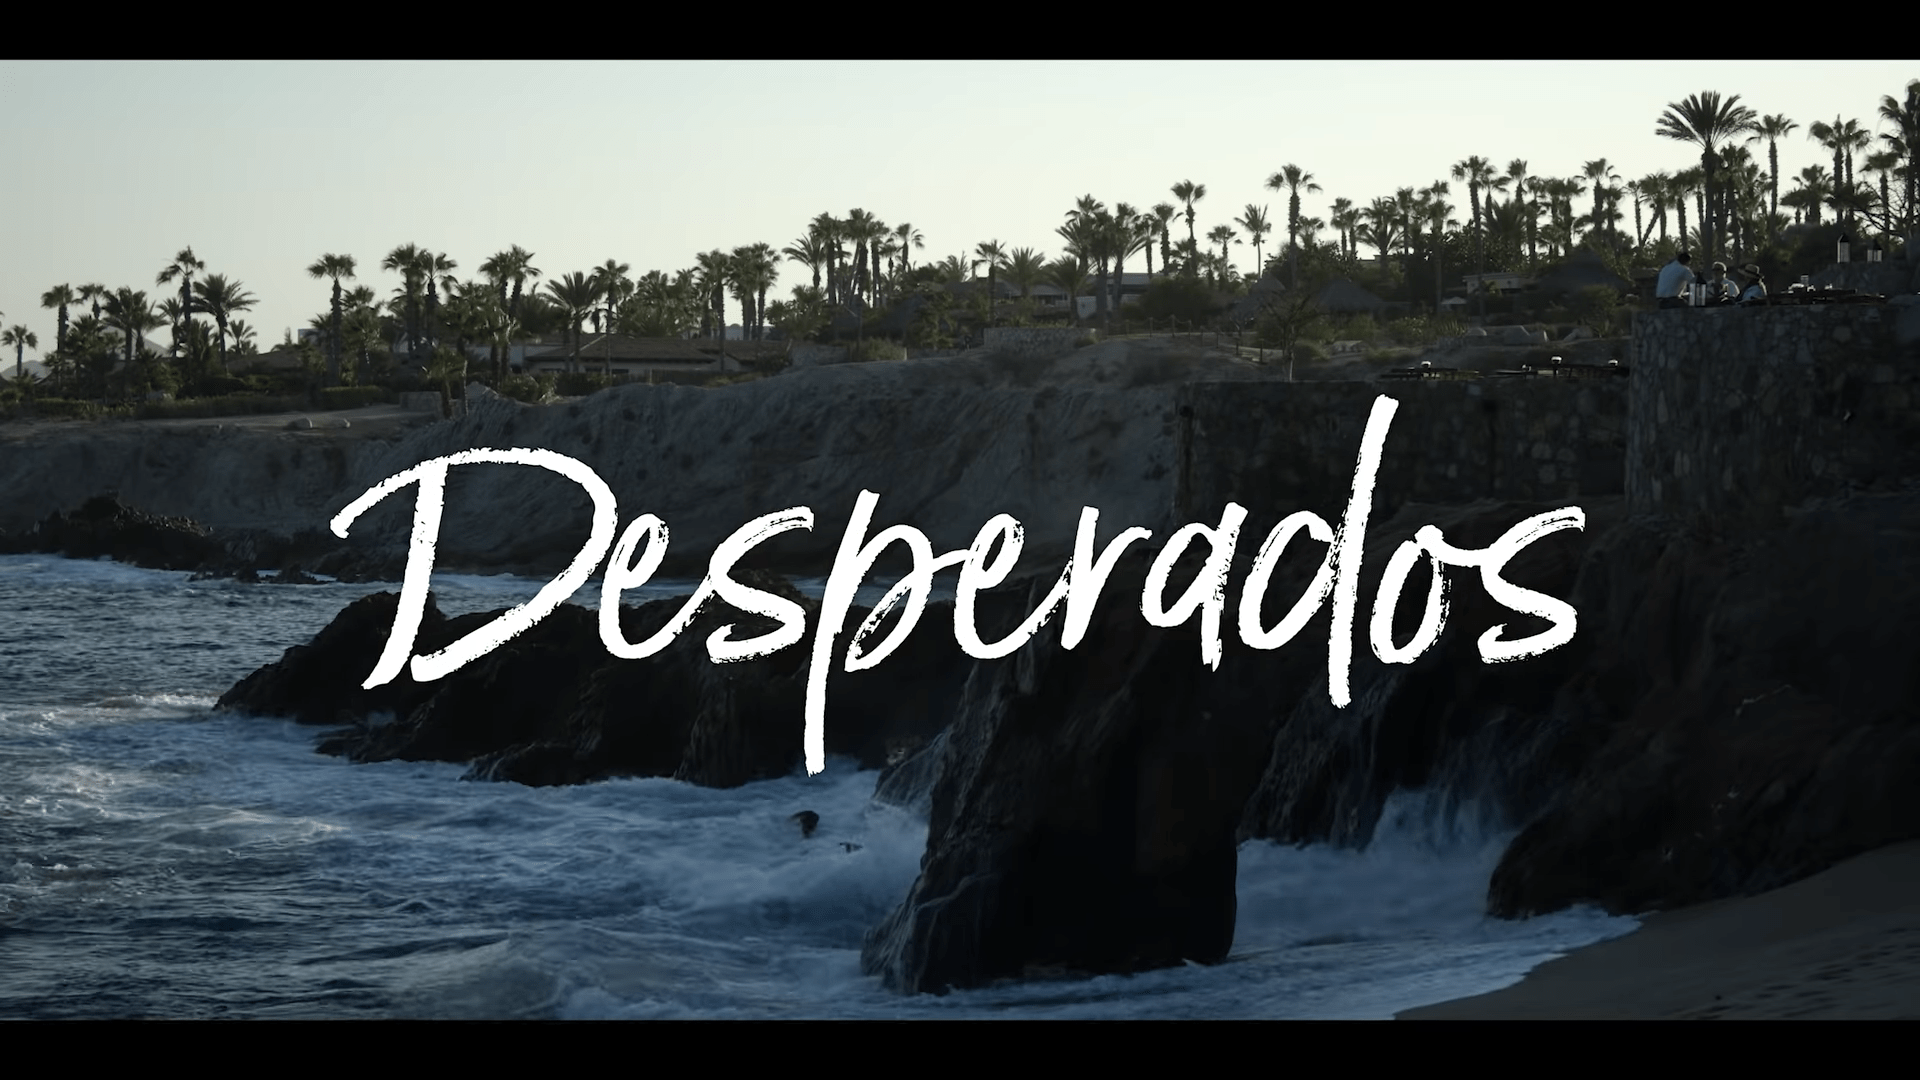 Netflix Desperados Trailer, Netflix Comedy Movie, Netflix Romance Movie, Coming to Netflix in July 2020